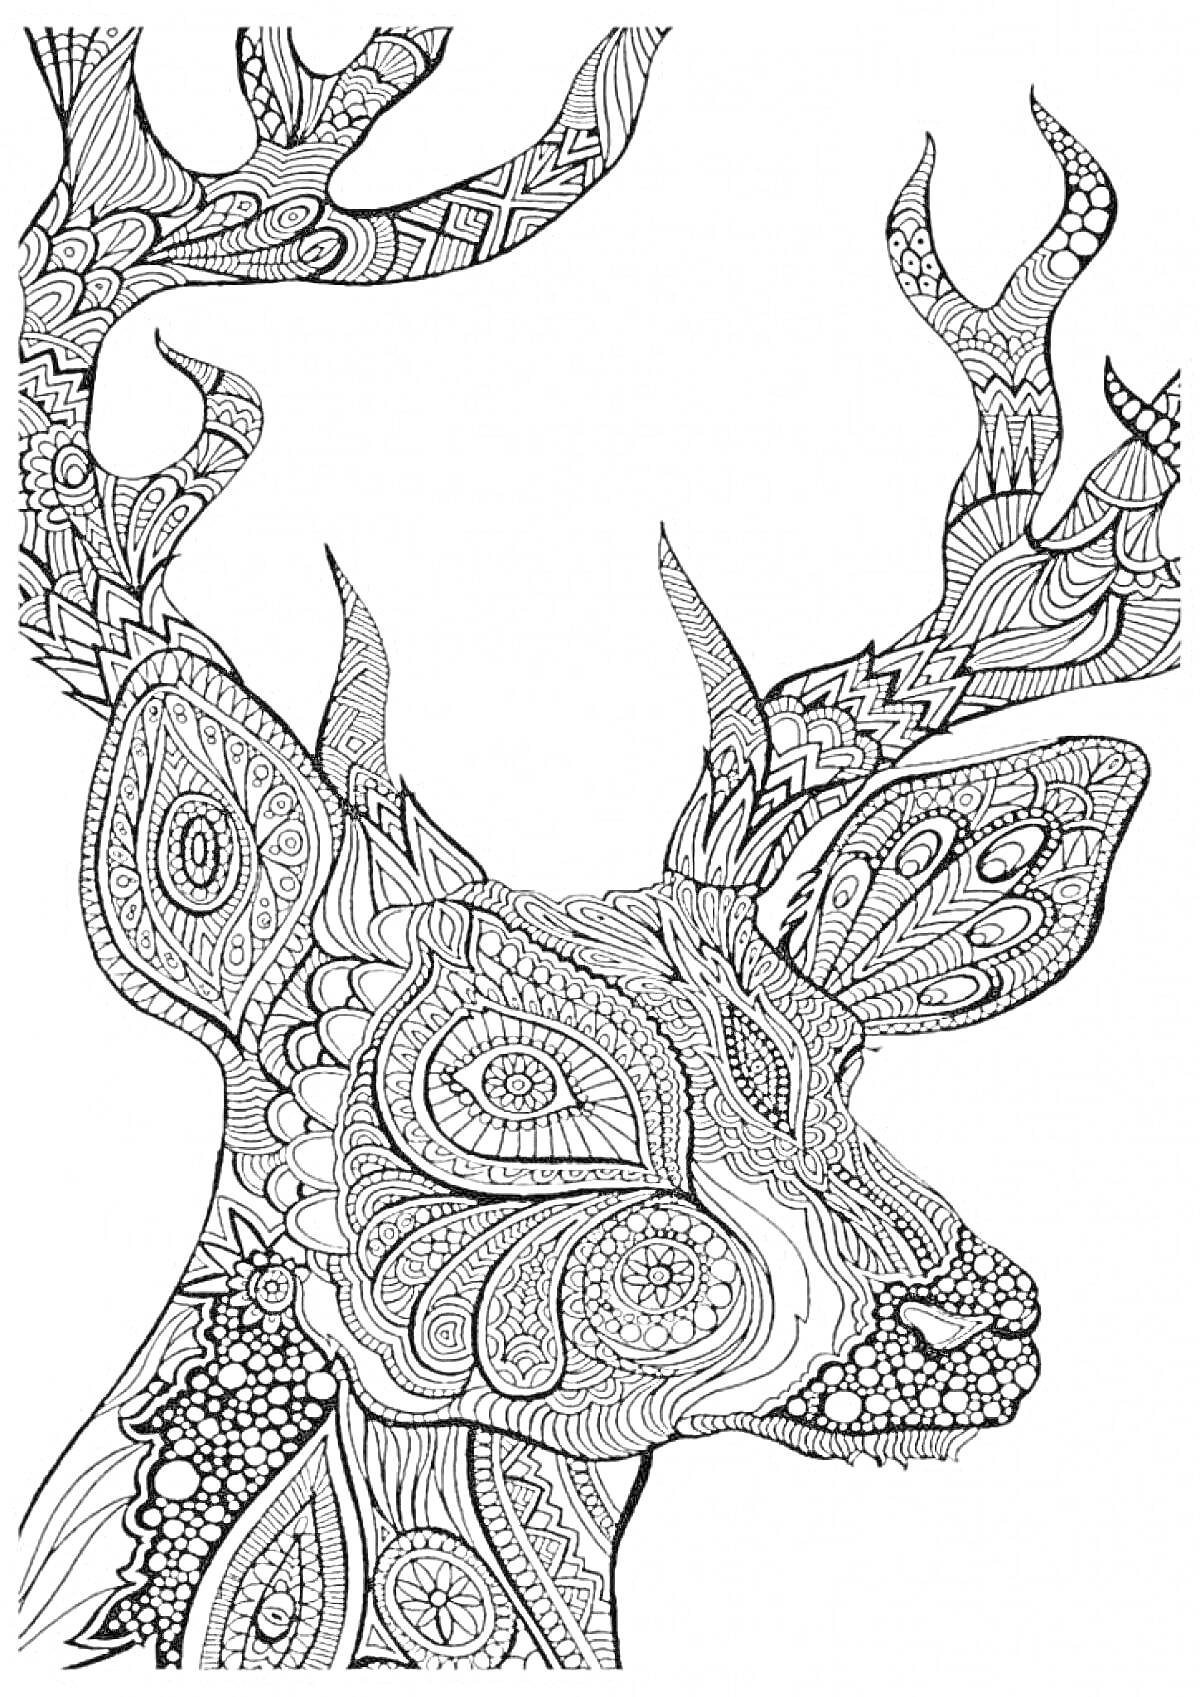 Раскраска Рисунок головы оленя с детализированными узорами на рогах и теле